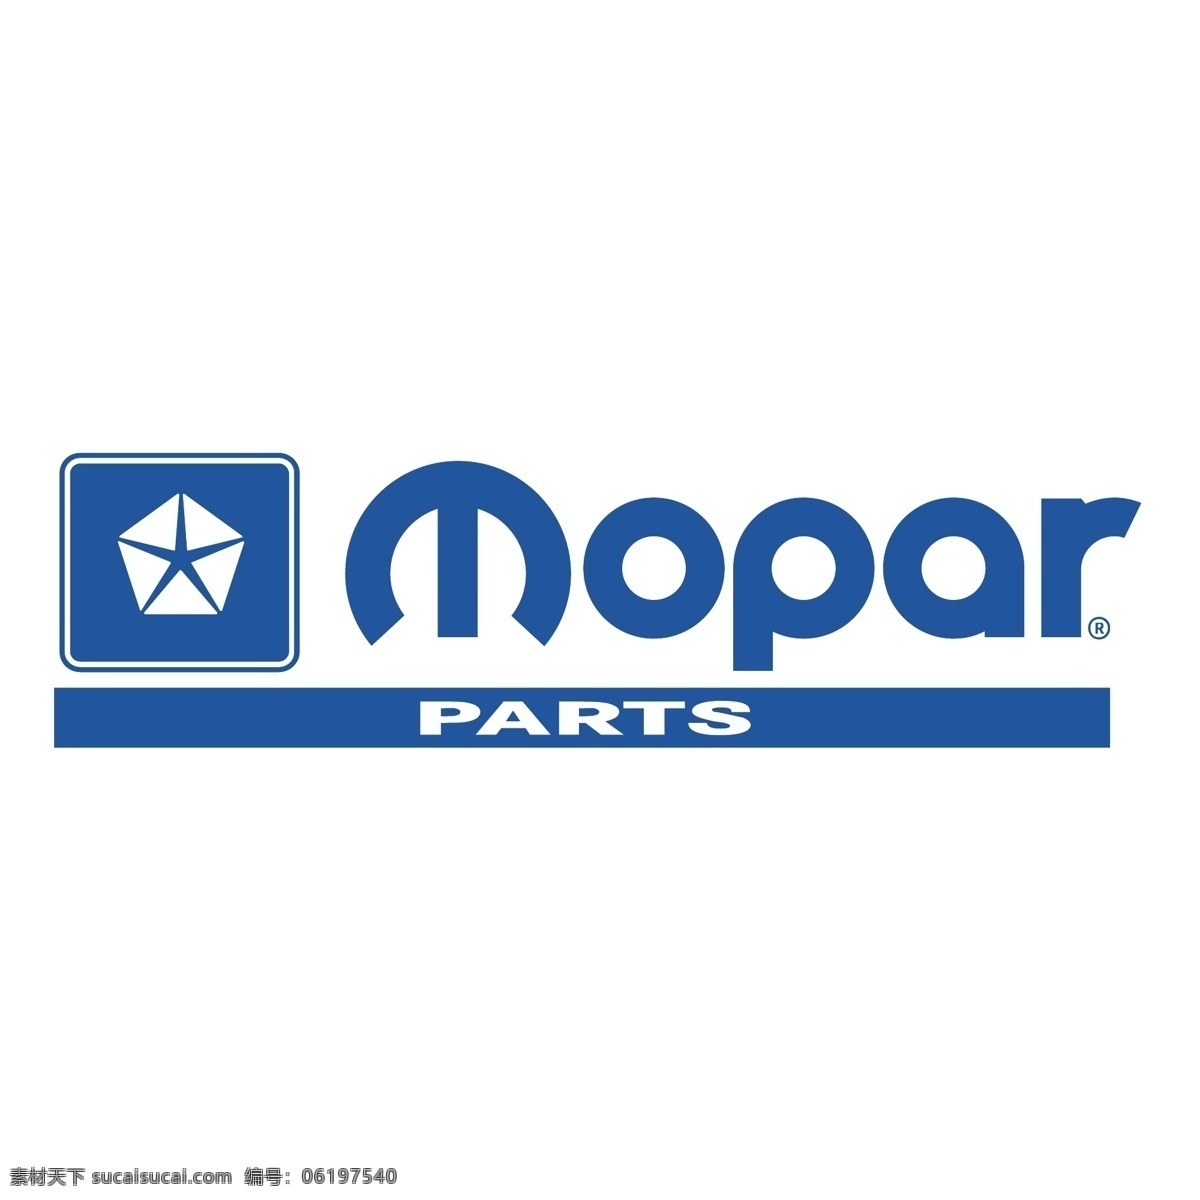 mopar 标识 公司 免费 品牌 品牌标识 商标 矢量标志下载 免费矢量标识 矢量 psd源文件 logo设计